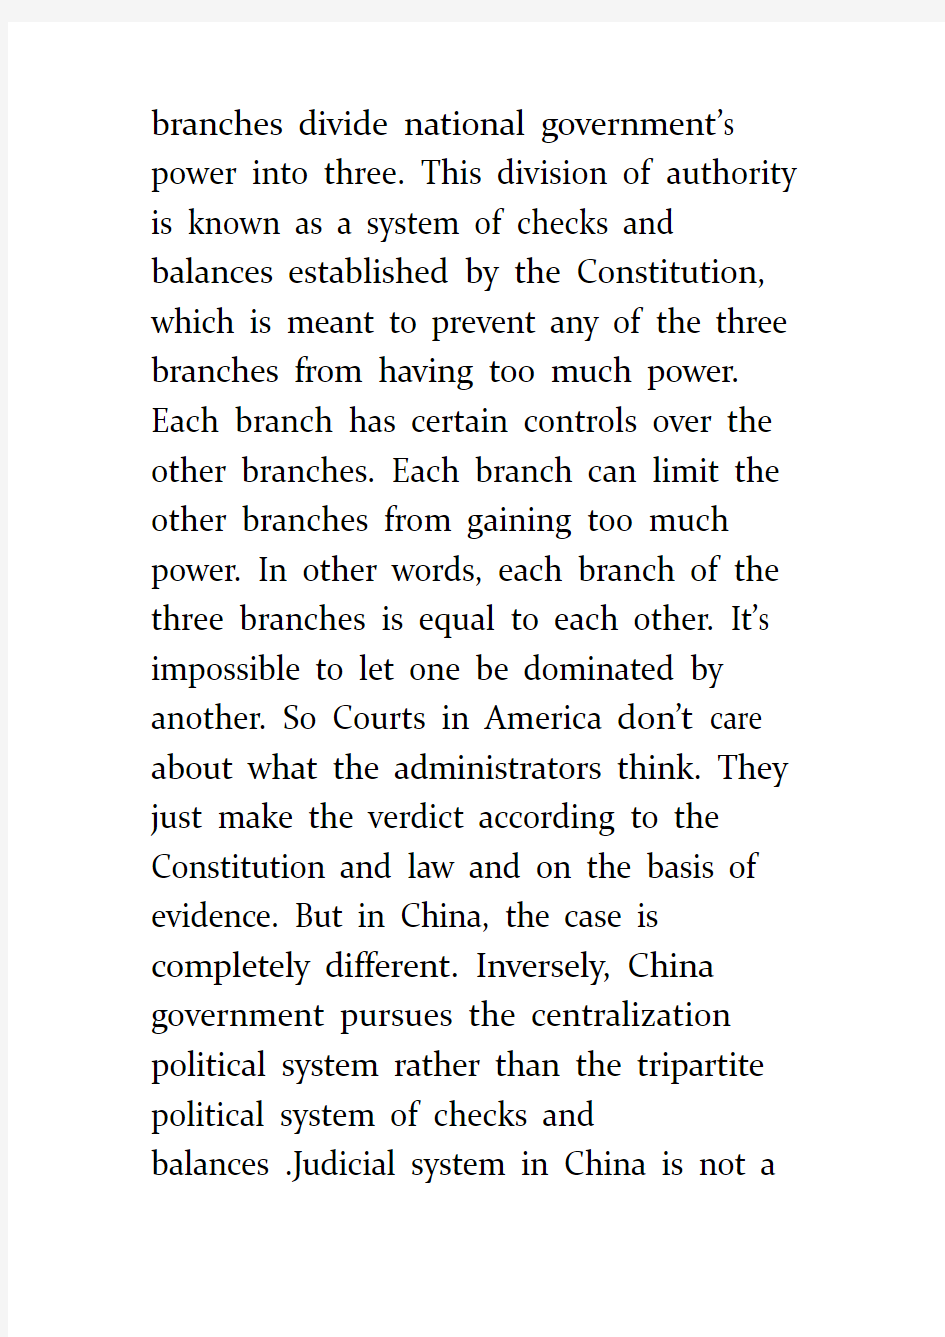 中美司法法律制度比较